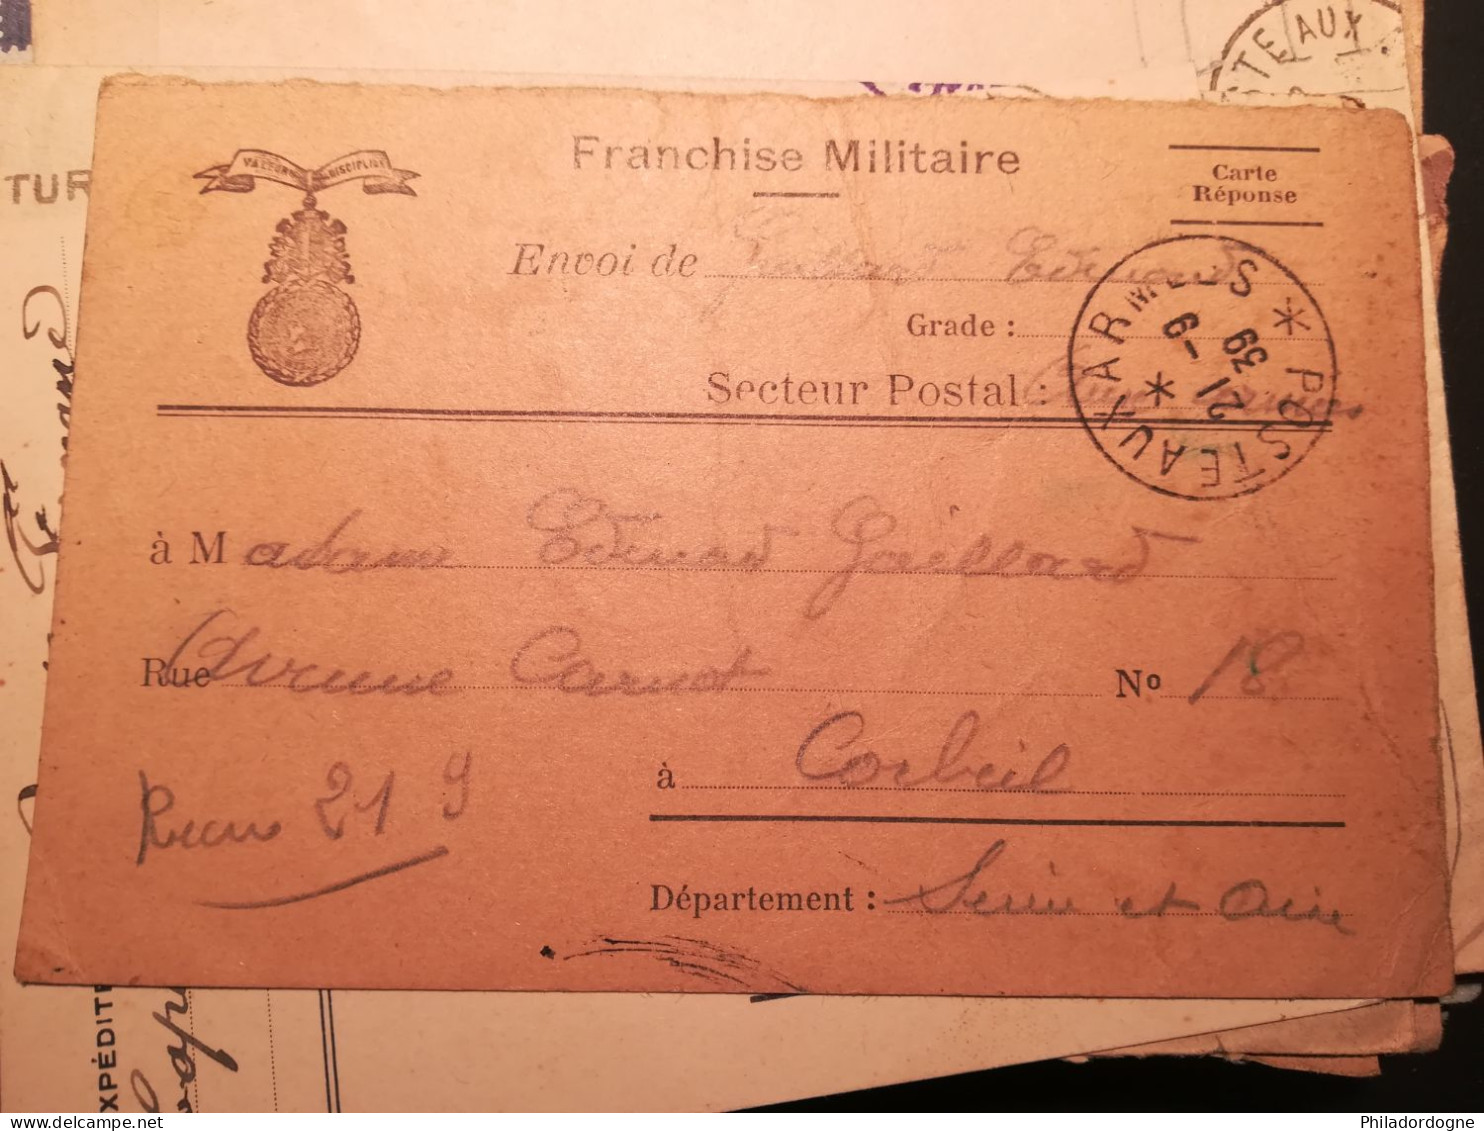 France - Lot de 83 documents en FM entre 1939 et 1945 à trier - poids 246 grammes